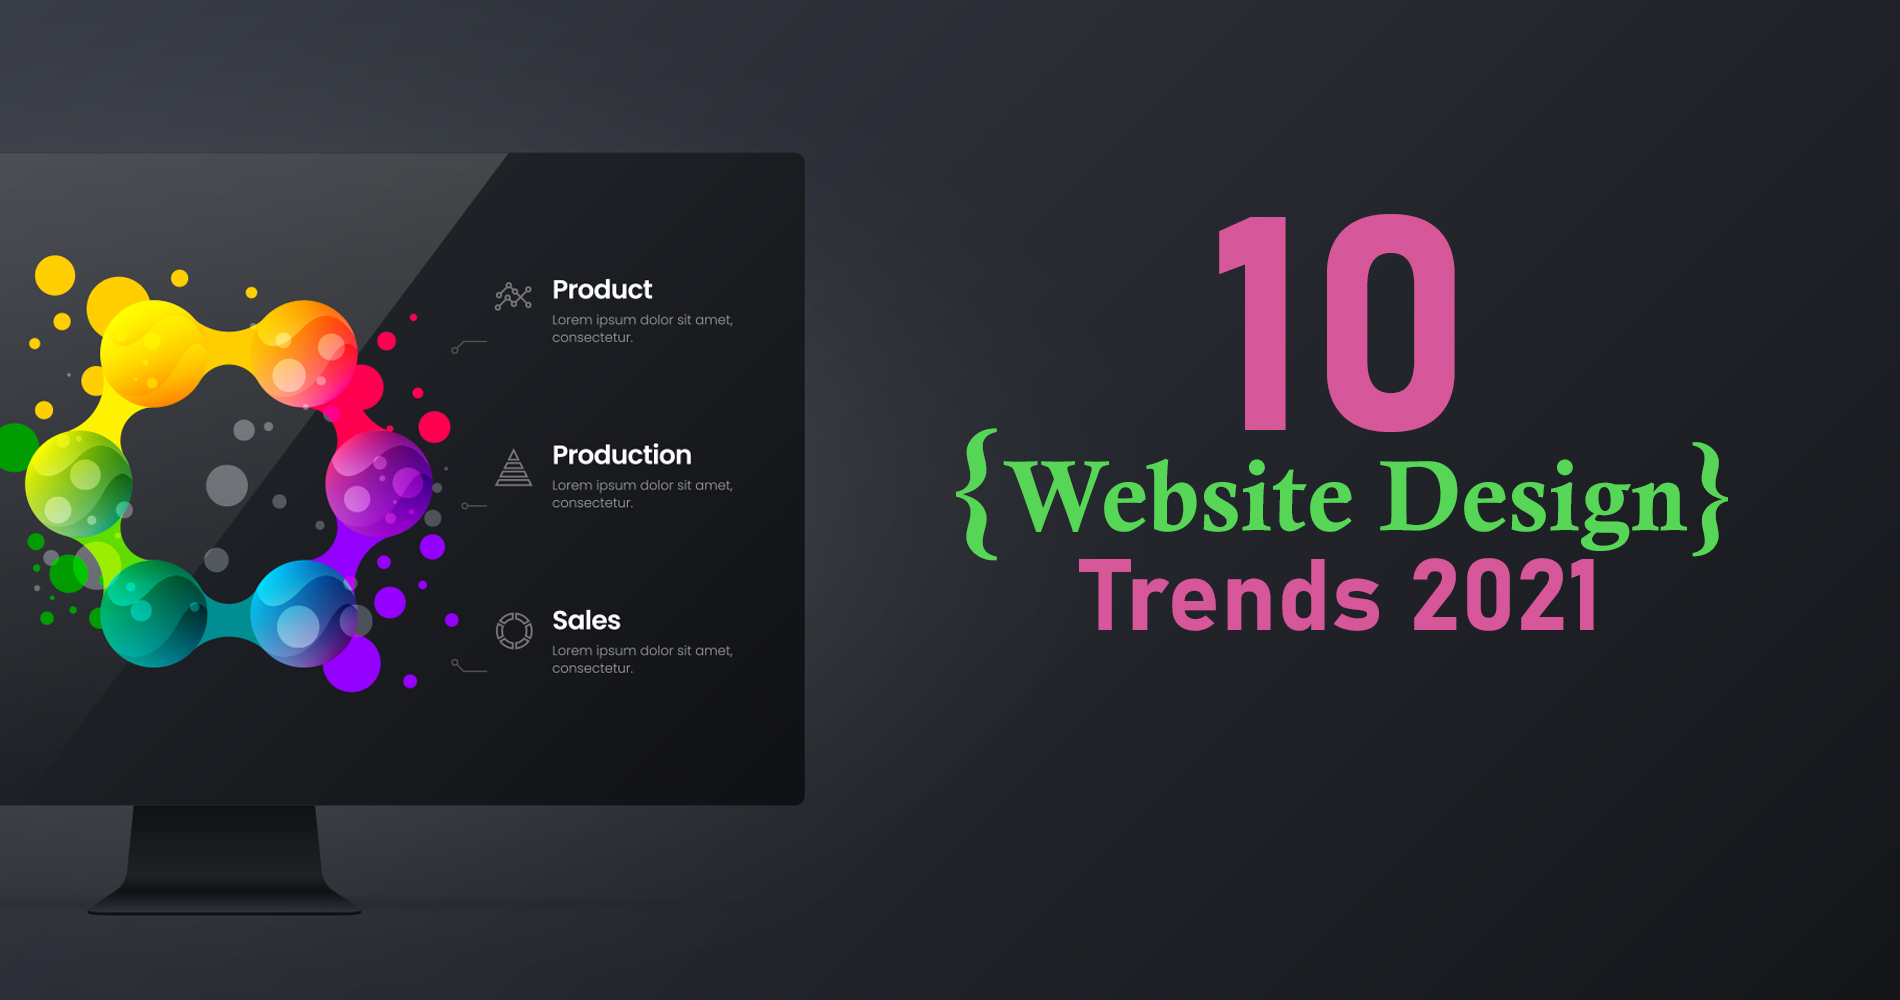 10 Website Design Trends 2021